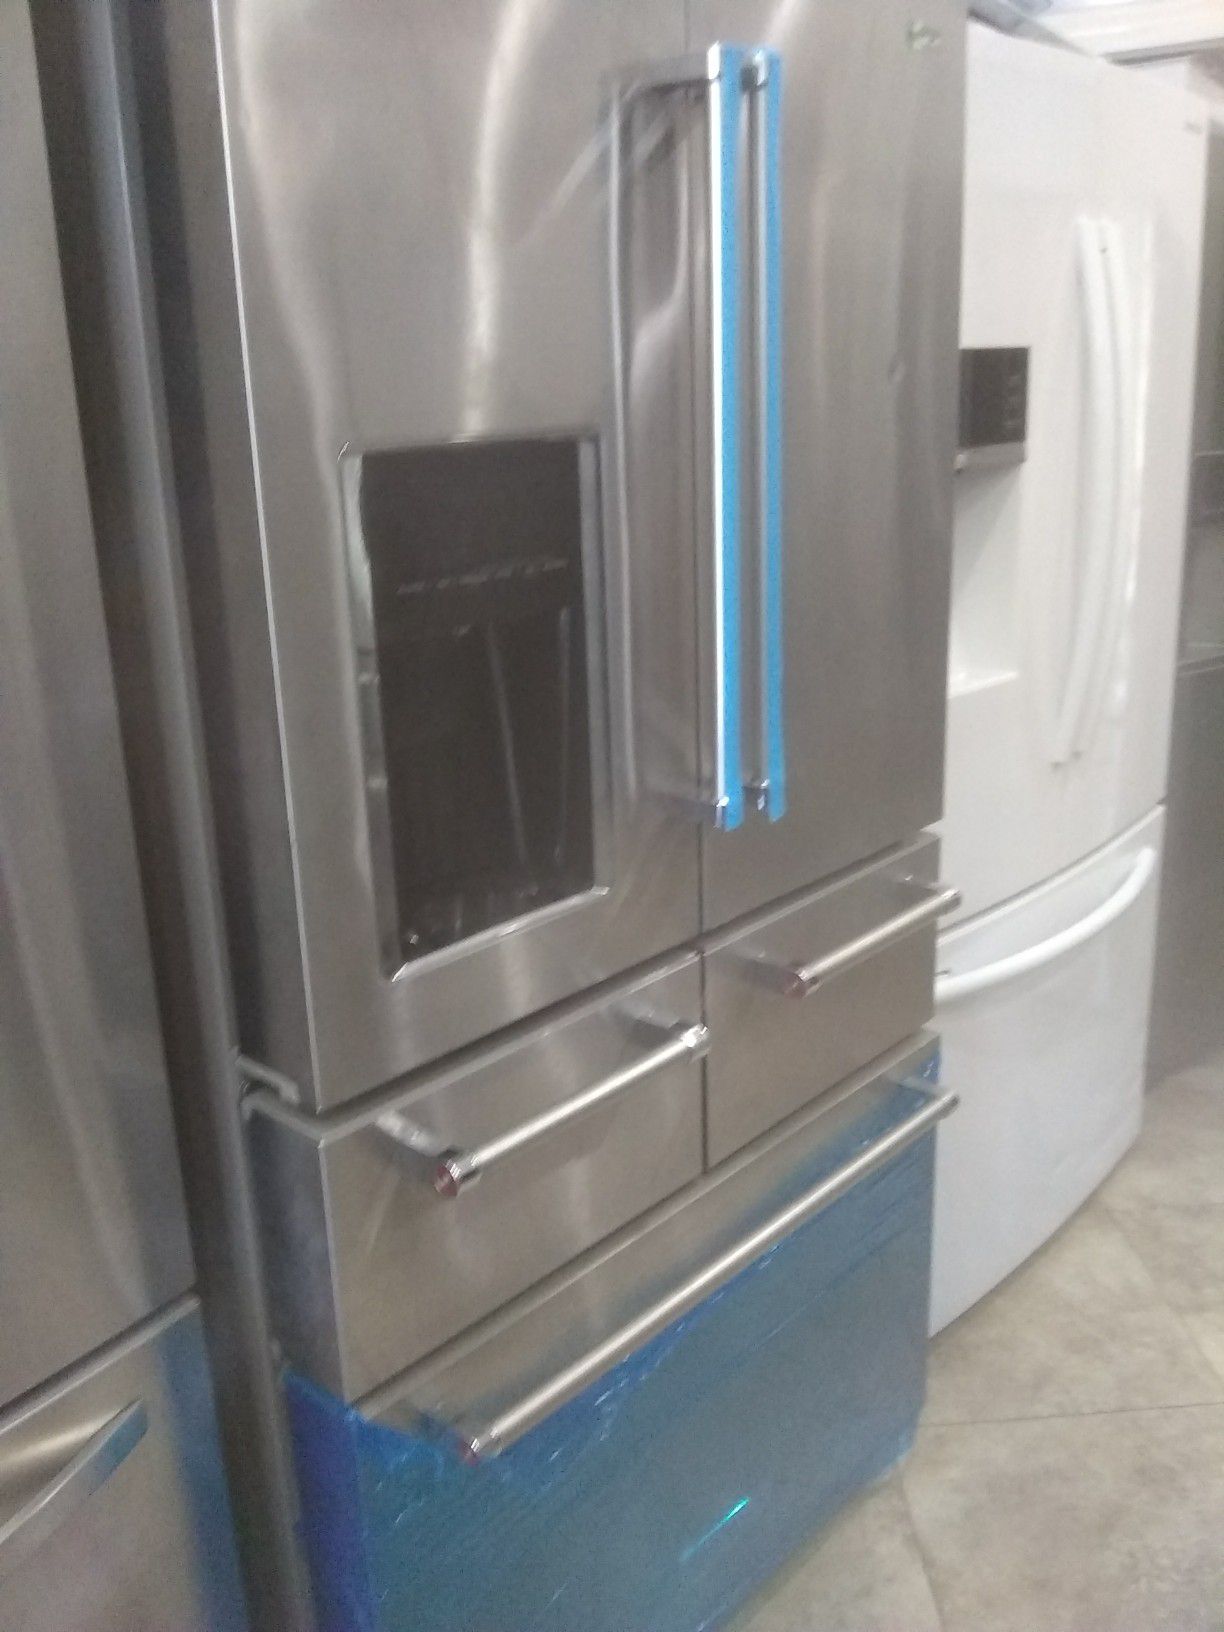 Stainless steel Kitchen-Aid refrigerator